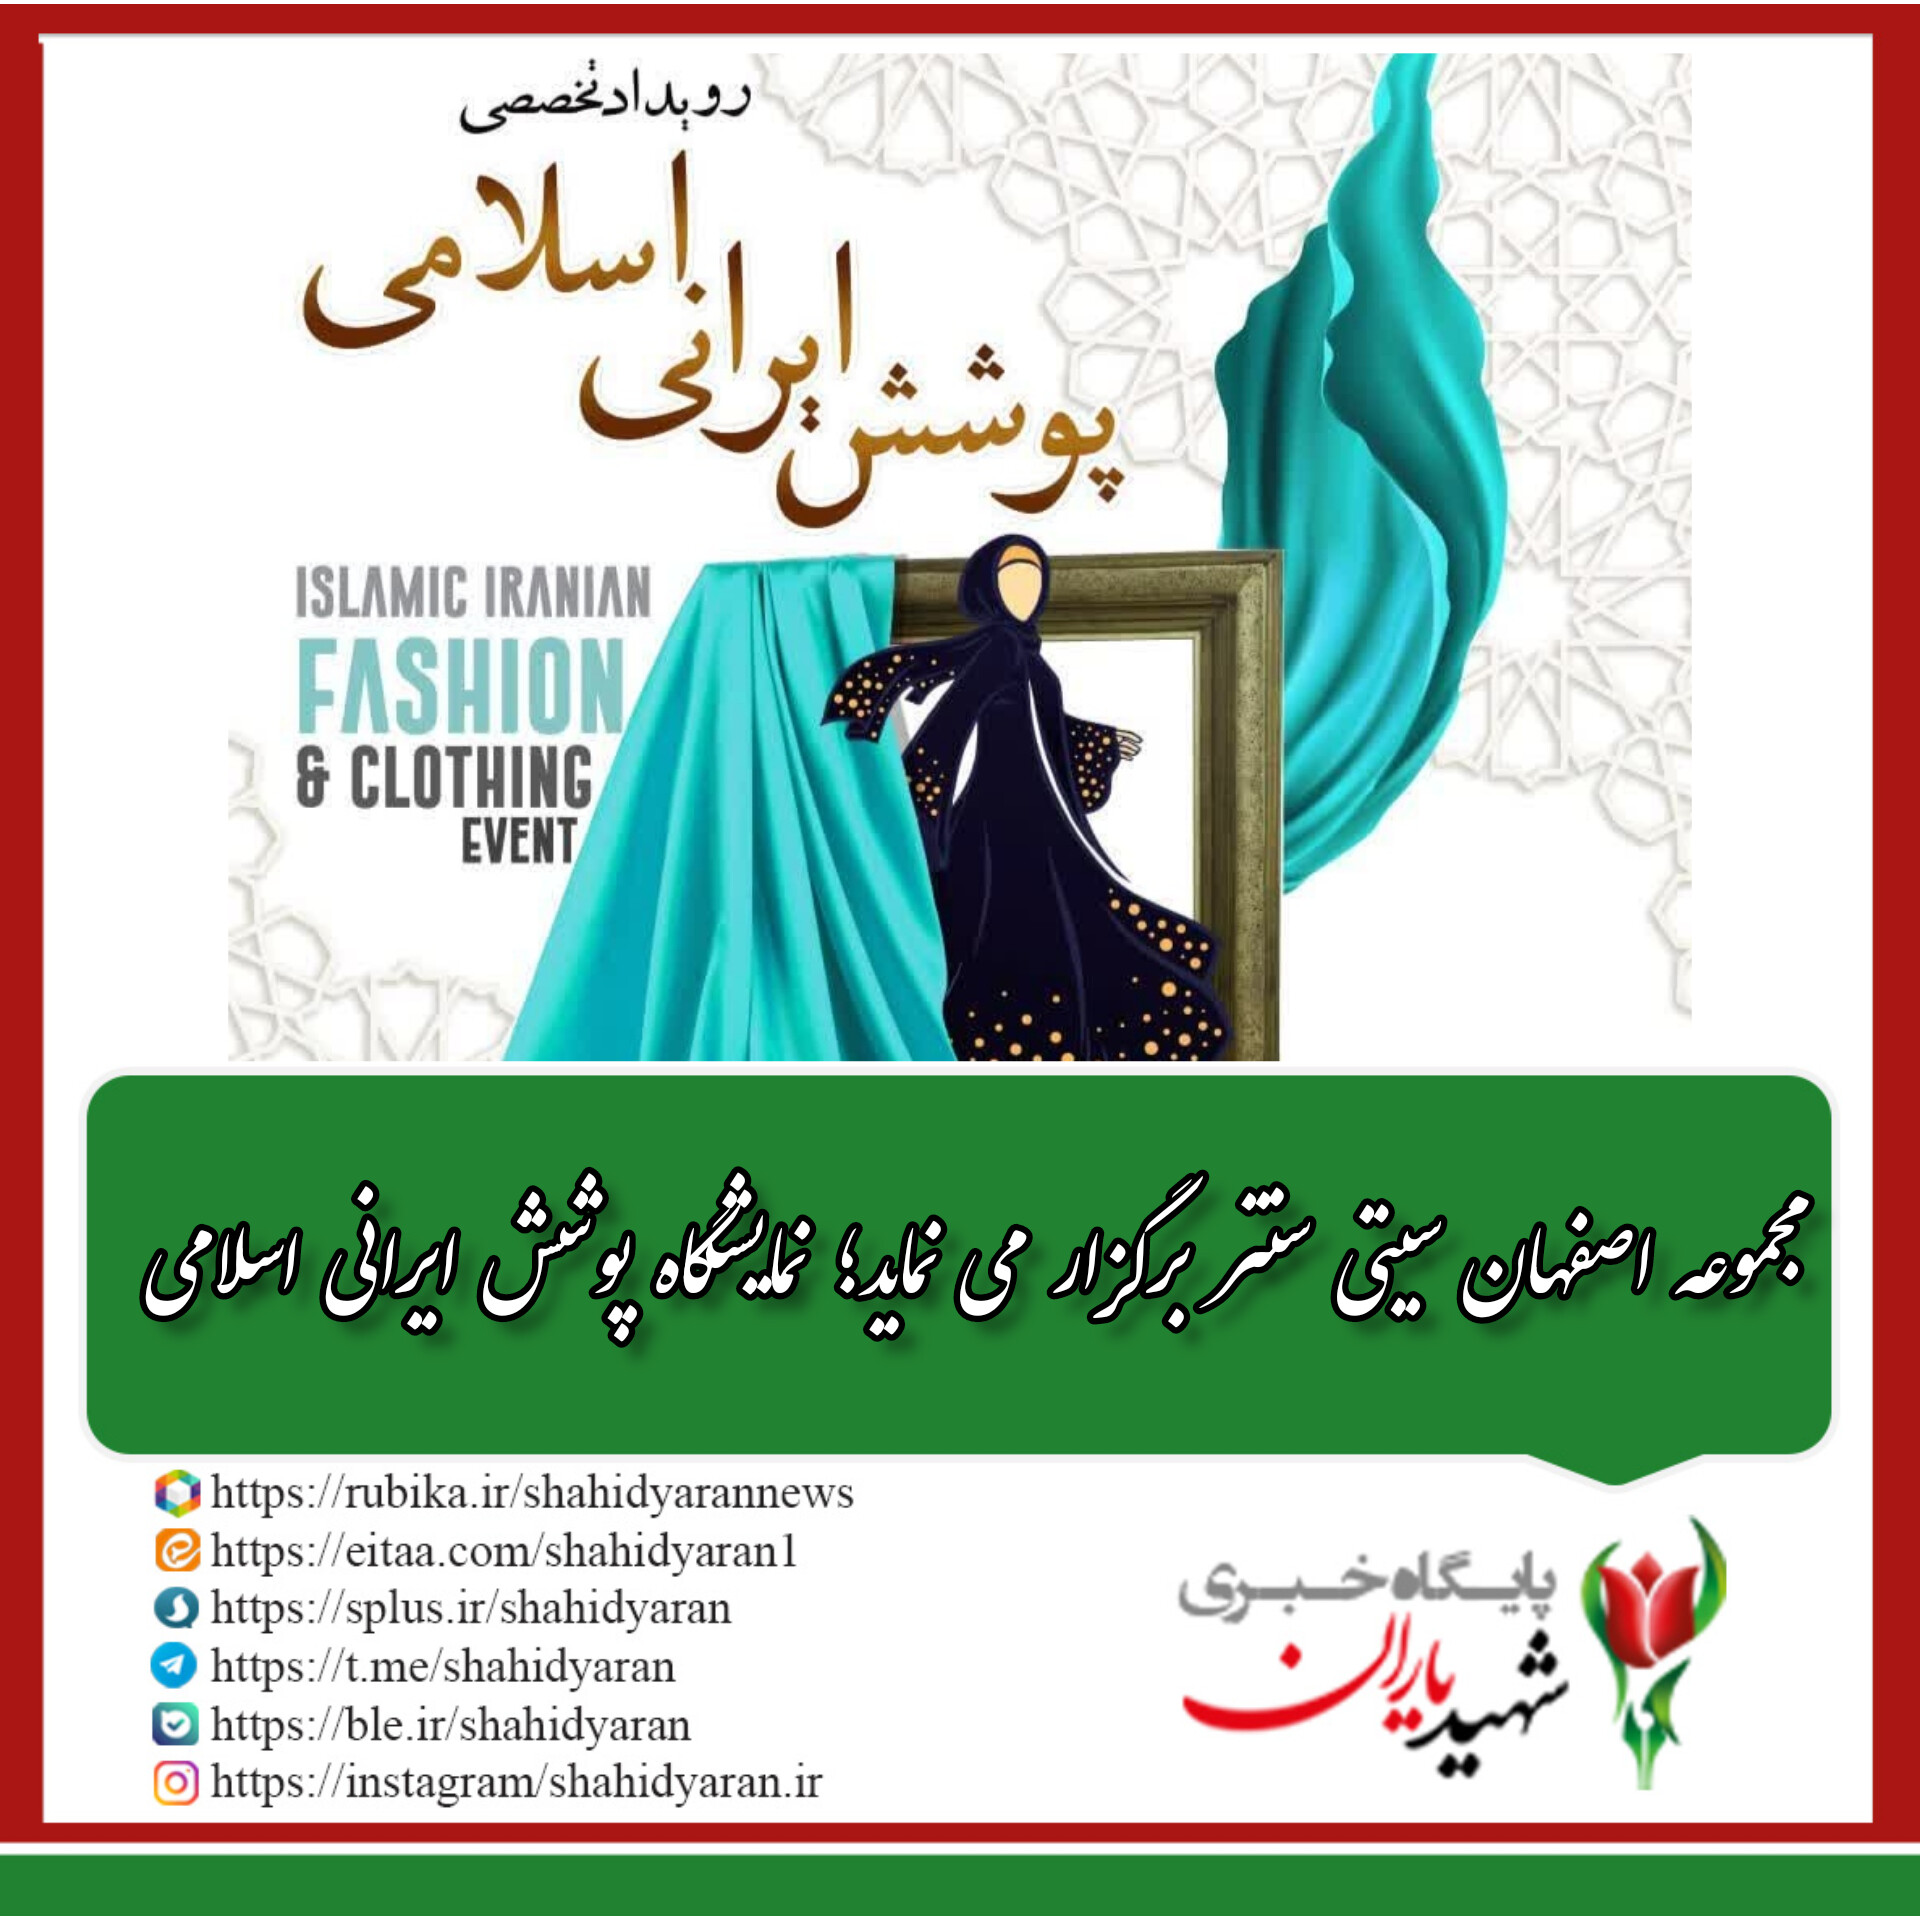 مجموعه اصفهان سیتی سنتر برگزار می نماید؛نمایشگاه پوشش ایرانی اسلامی